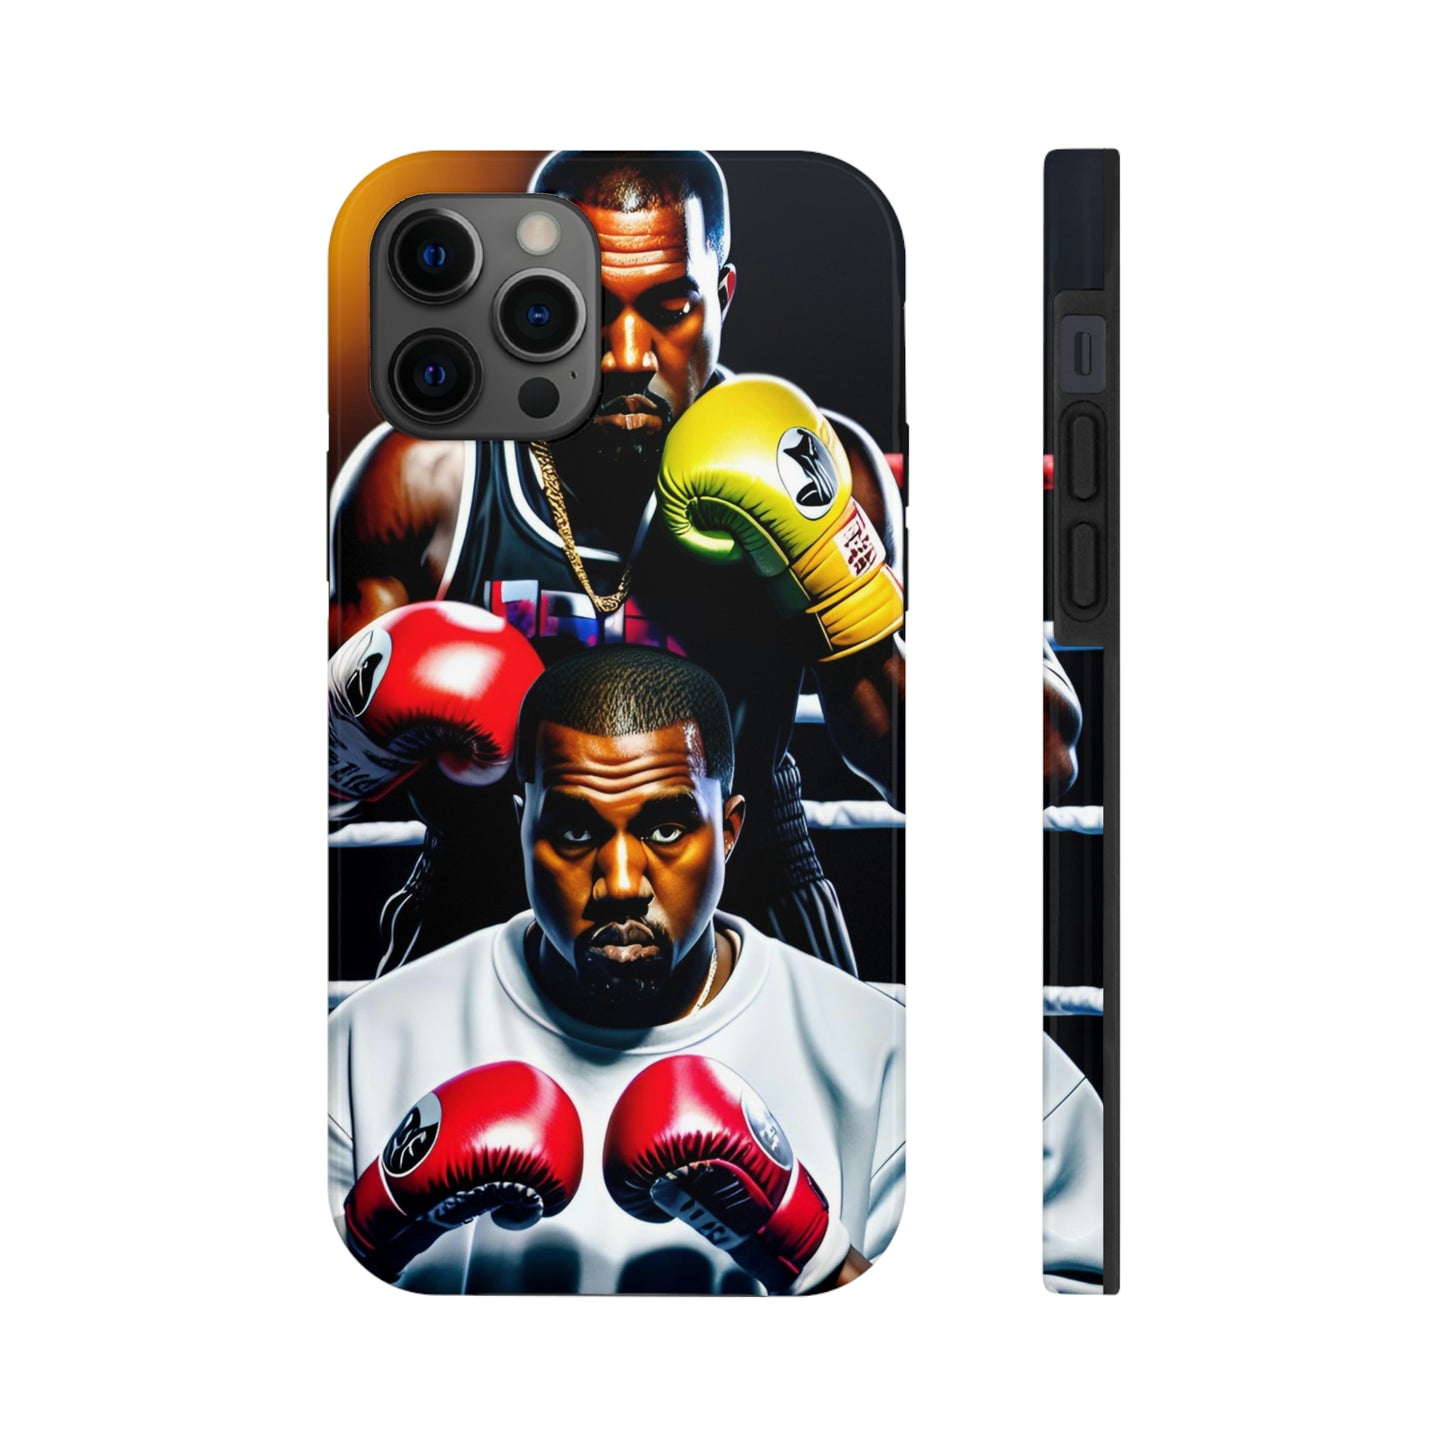 Kanye Boxing Phone Case